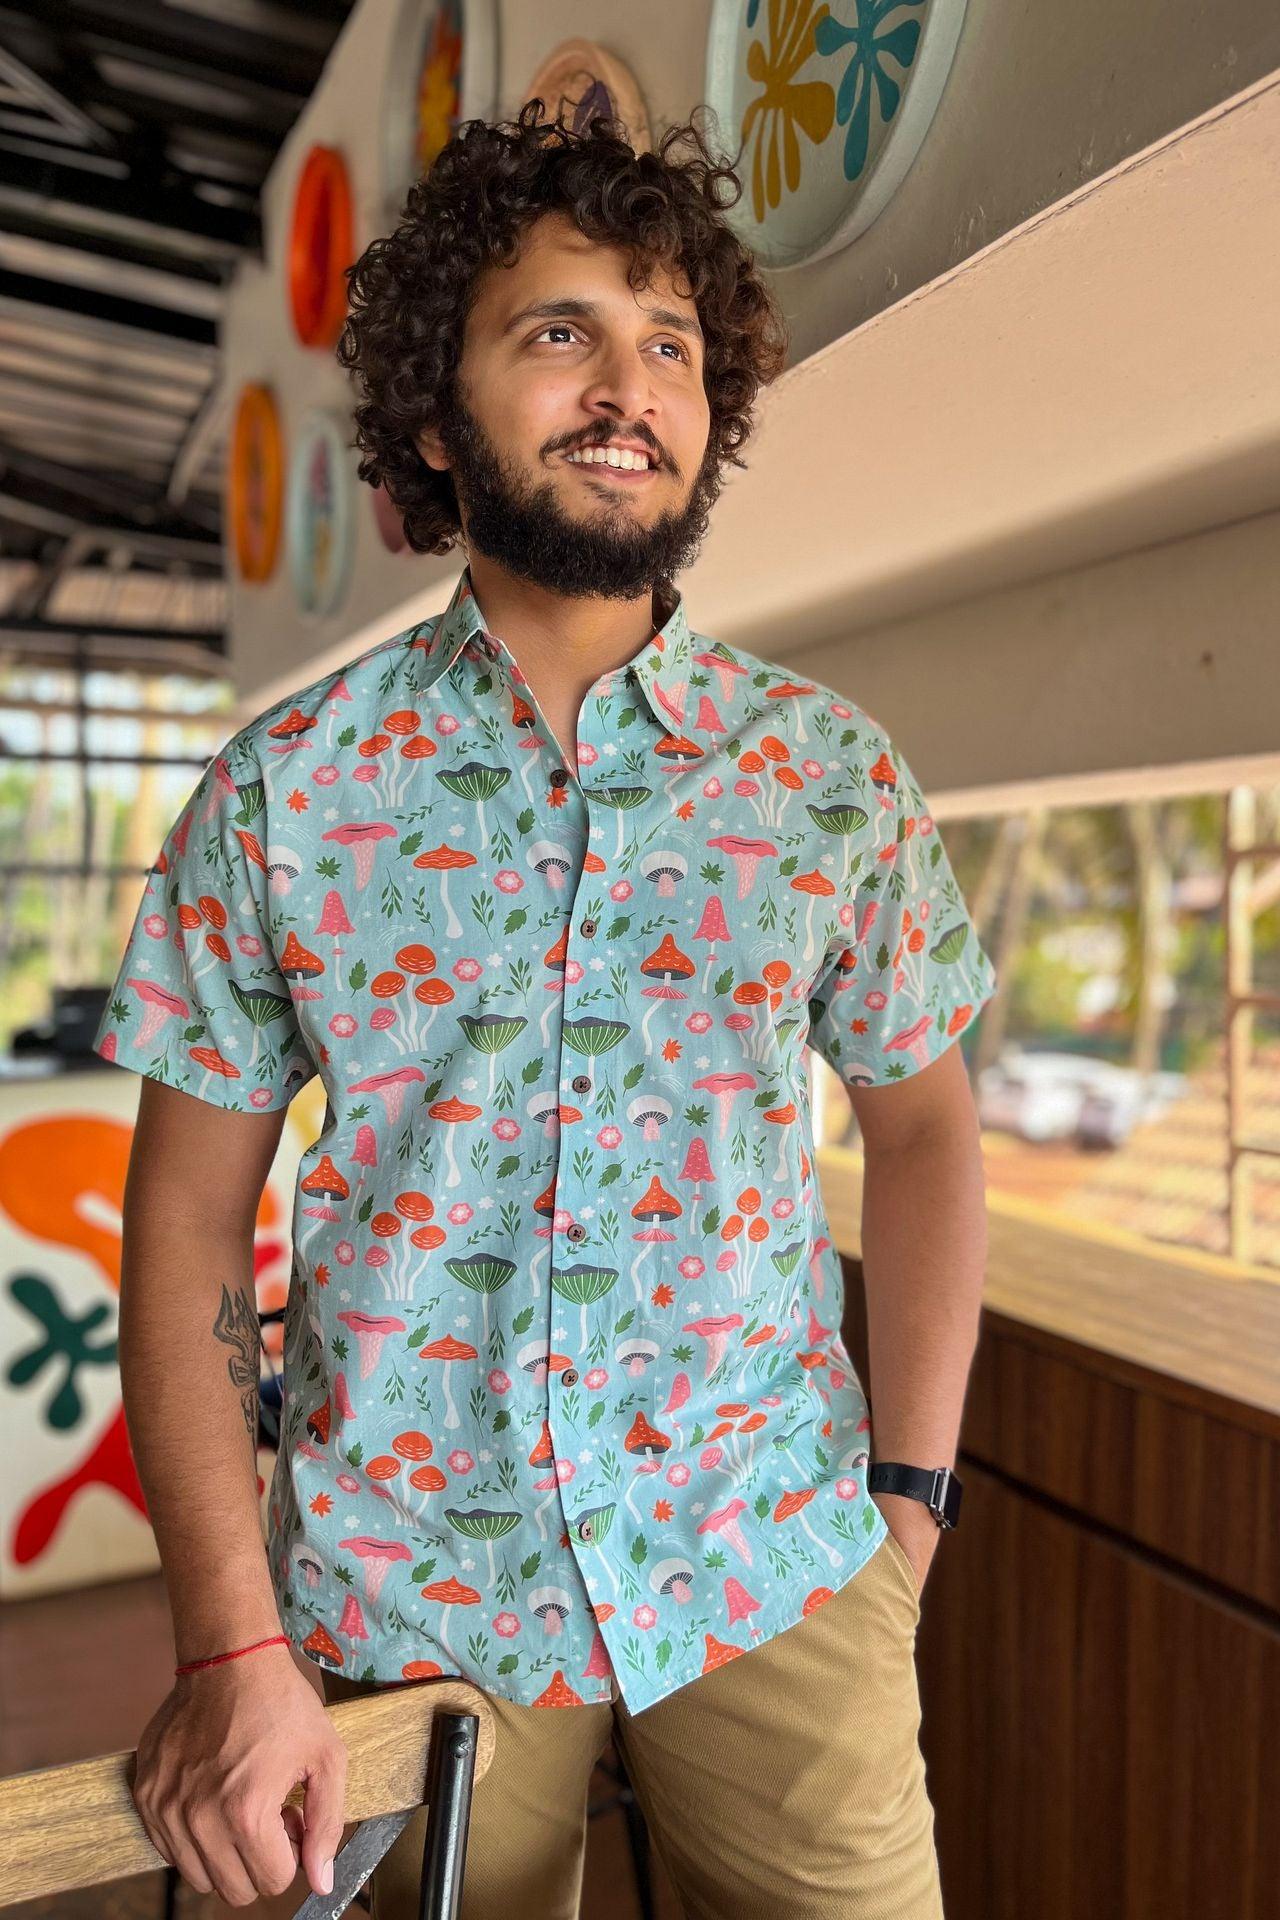 Mushroom forest print resort wear shirt  for men in Goa